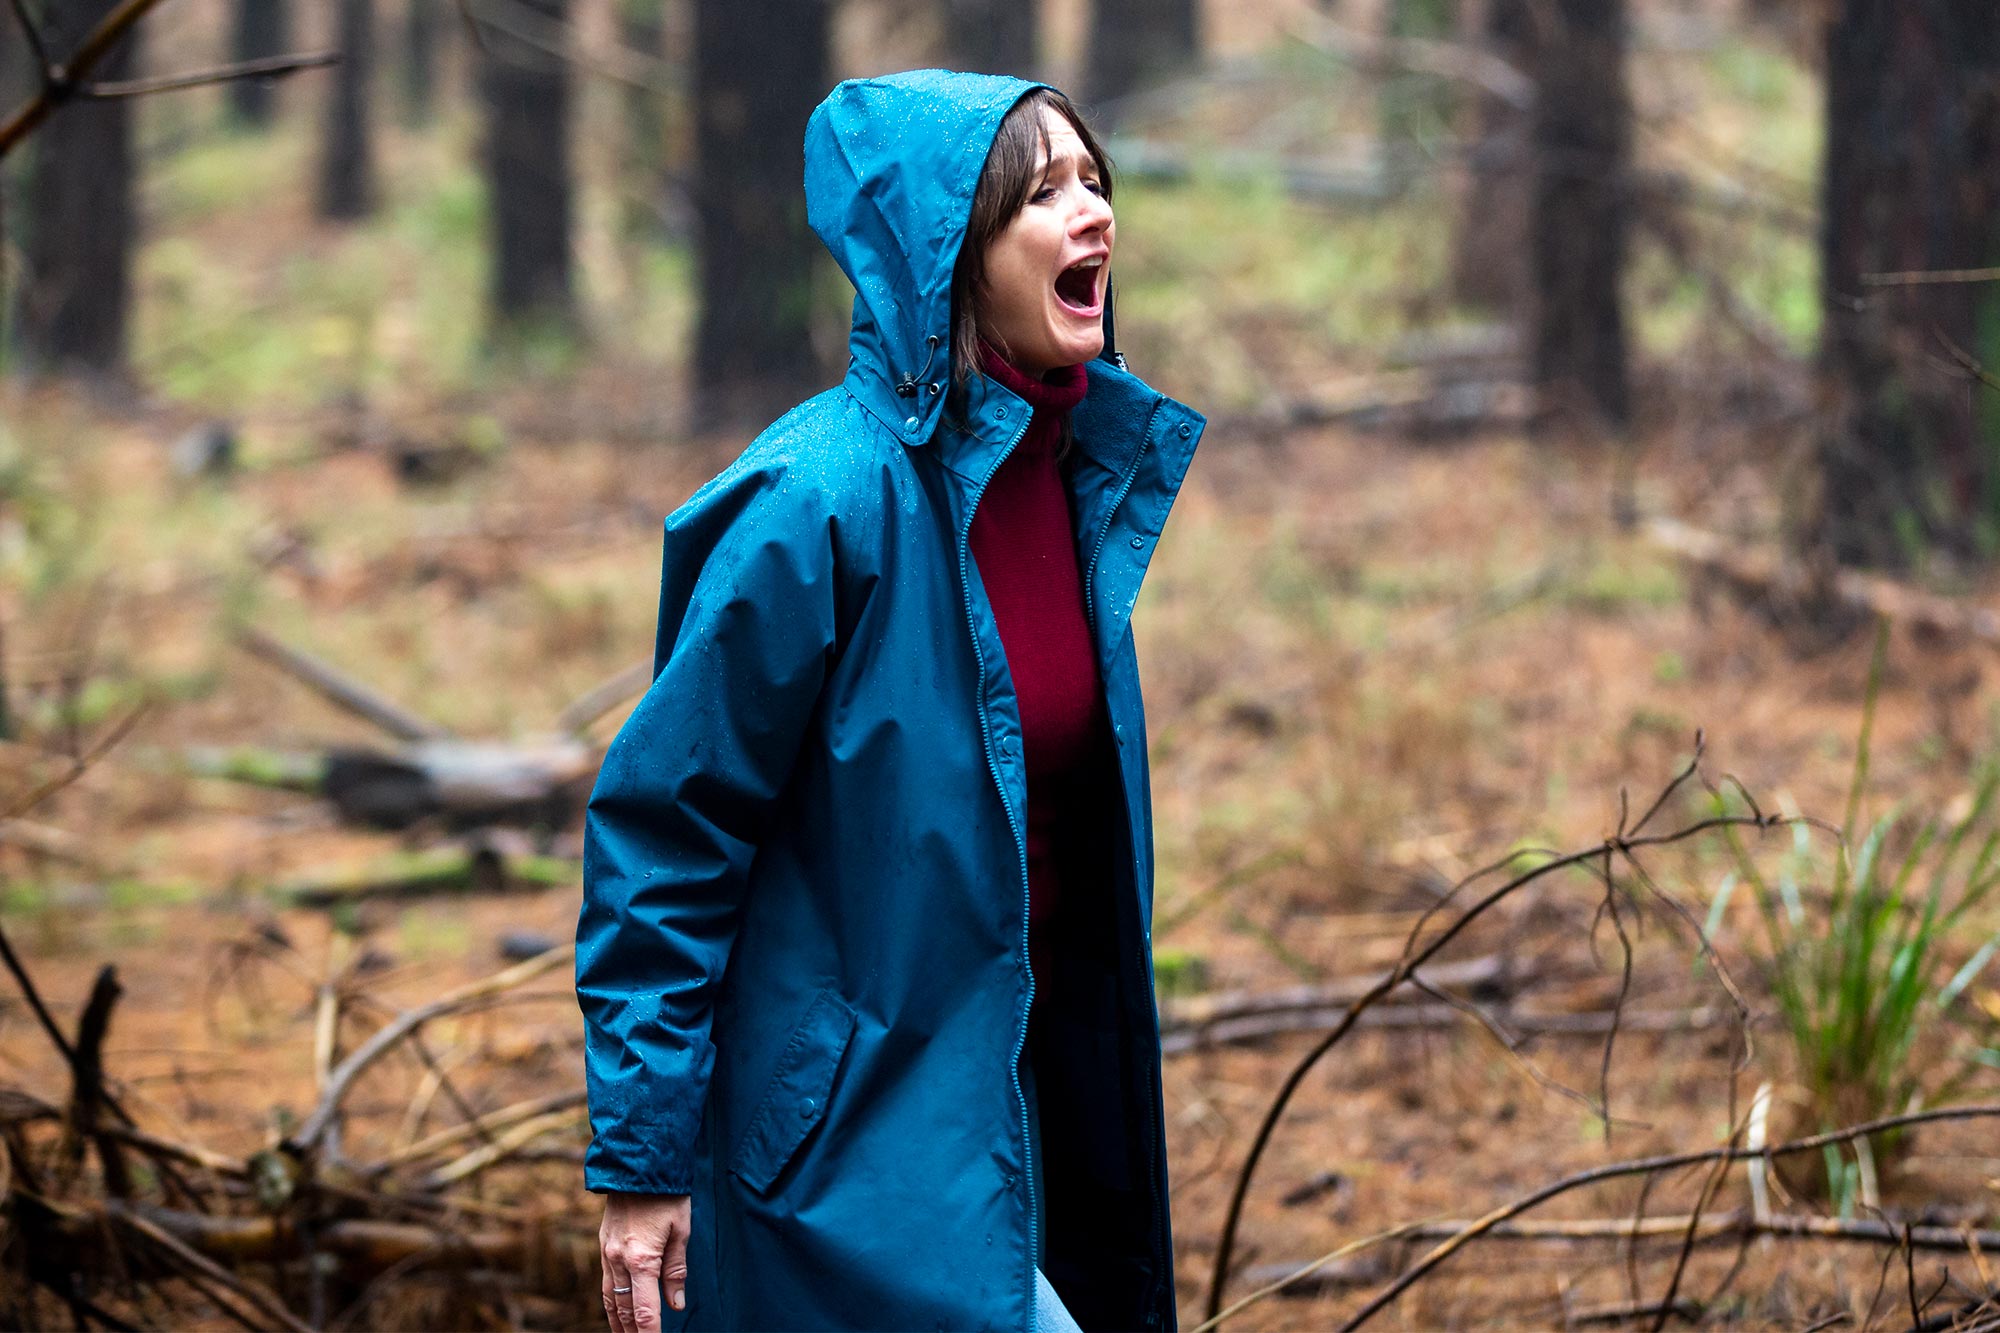 Relic Trailer Emily Mortimer Stars In The Breakout Horror Film From Sundance 